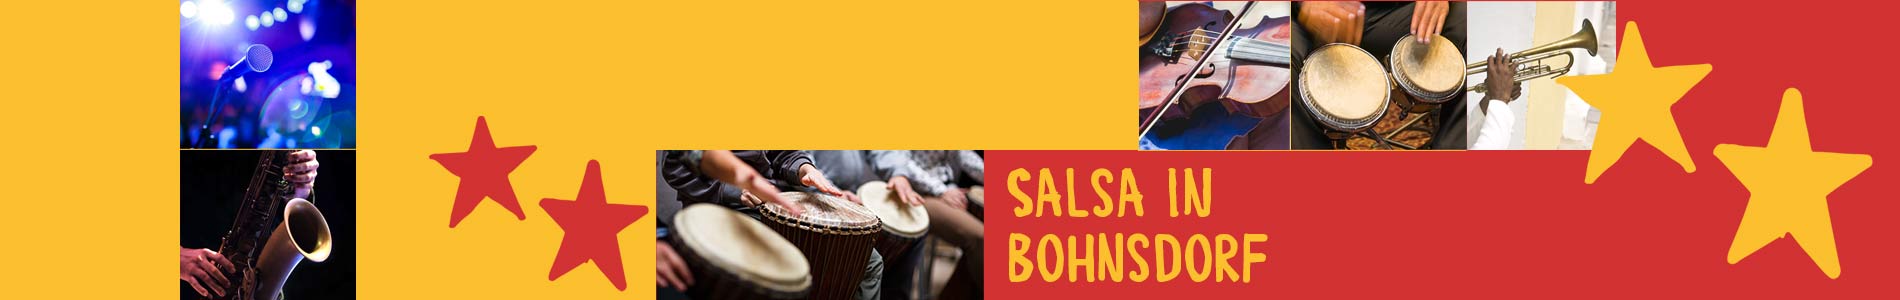 Salsa in Bohnsdorf – Salsa lernen und tanzen, Tanzkurse, Partys, Veranstaltungen